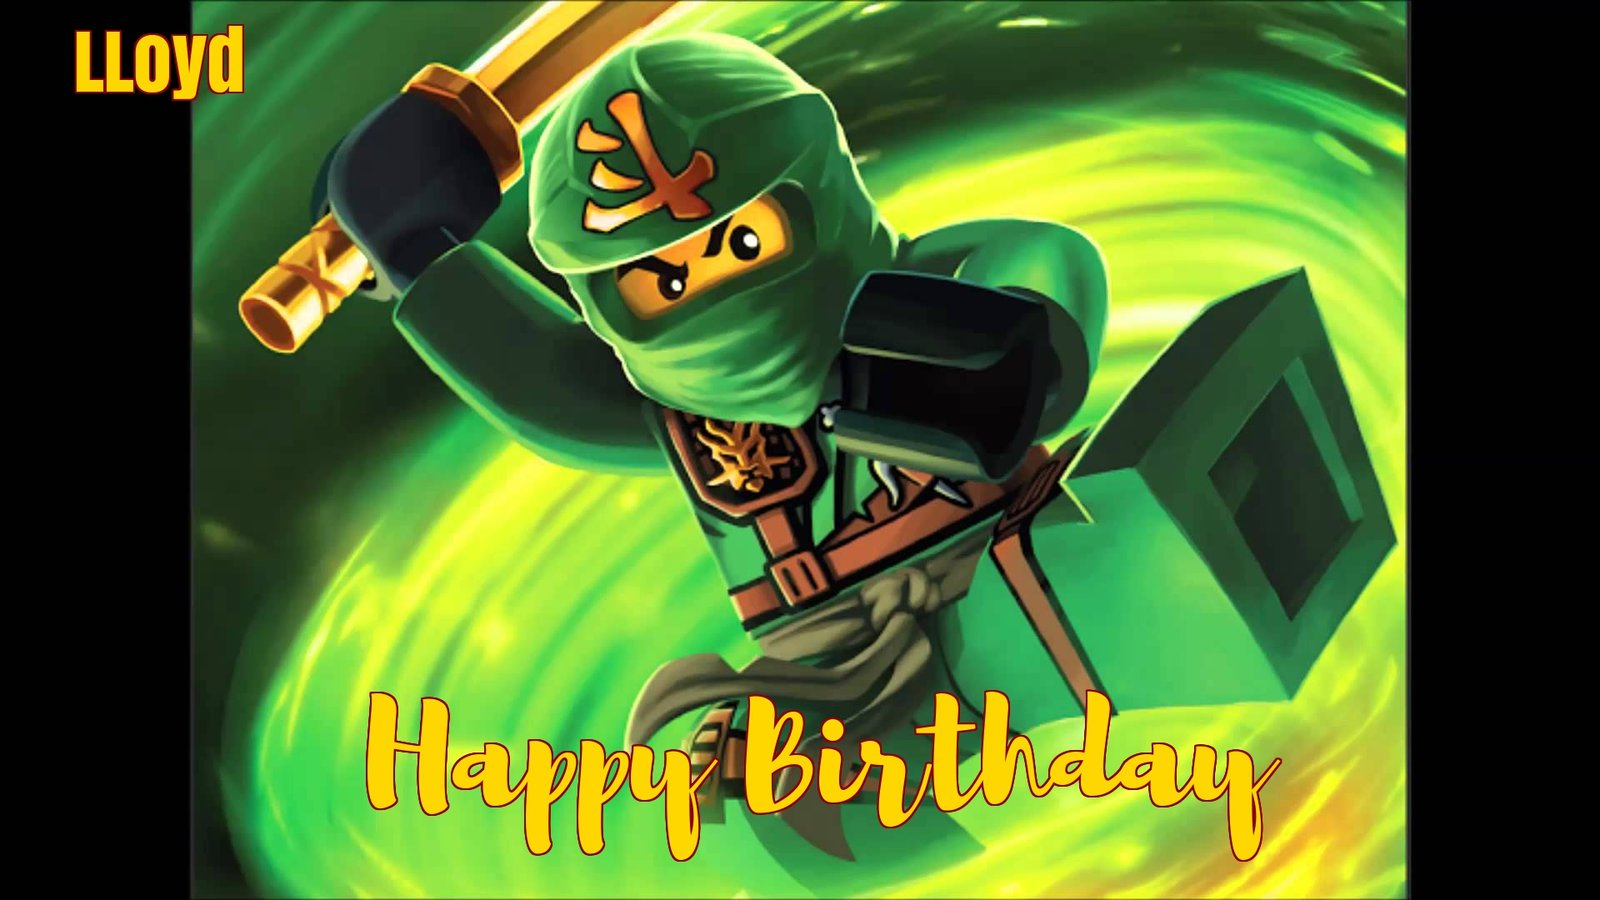 ninja-go birthday cards